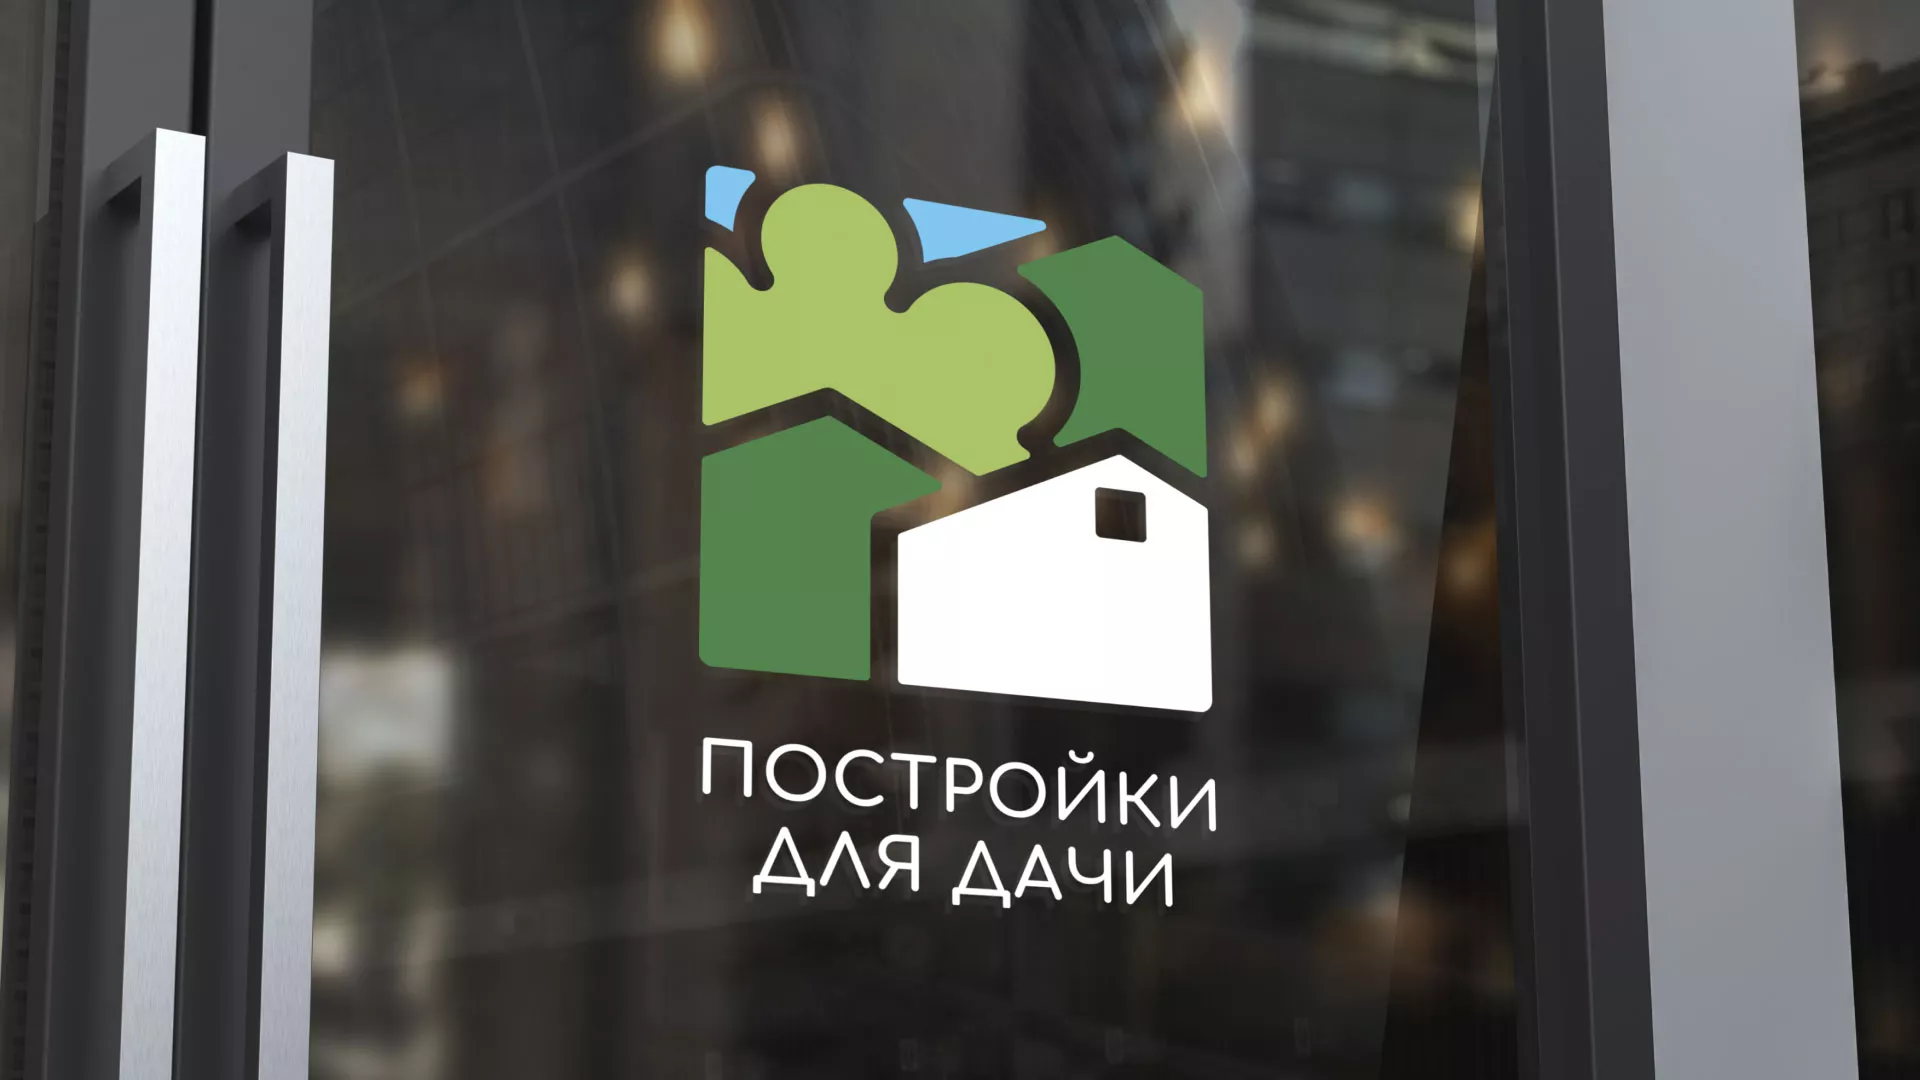 Разработка логотипа в Чкаловском для компании «Постройки для дачи»